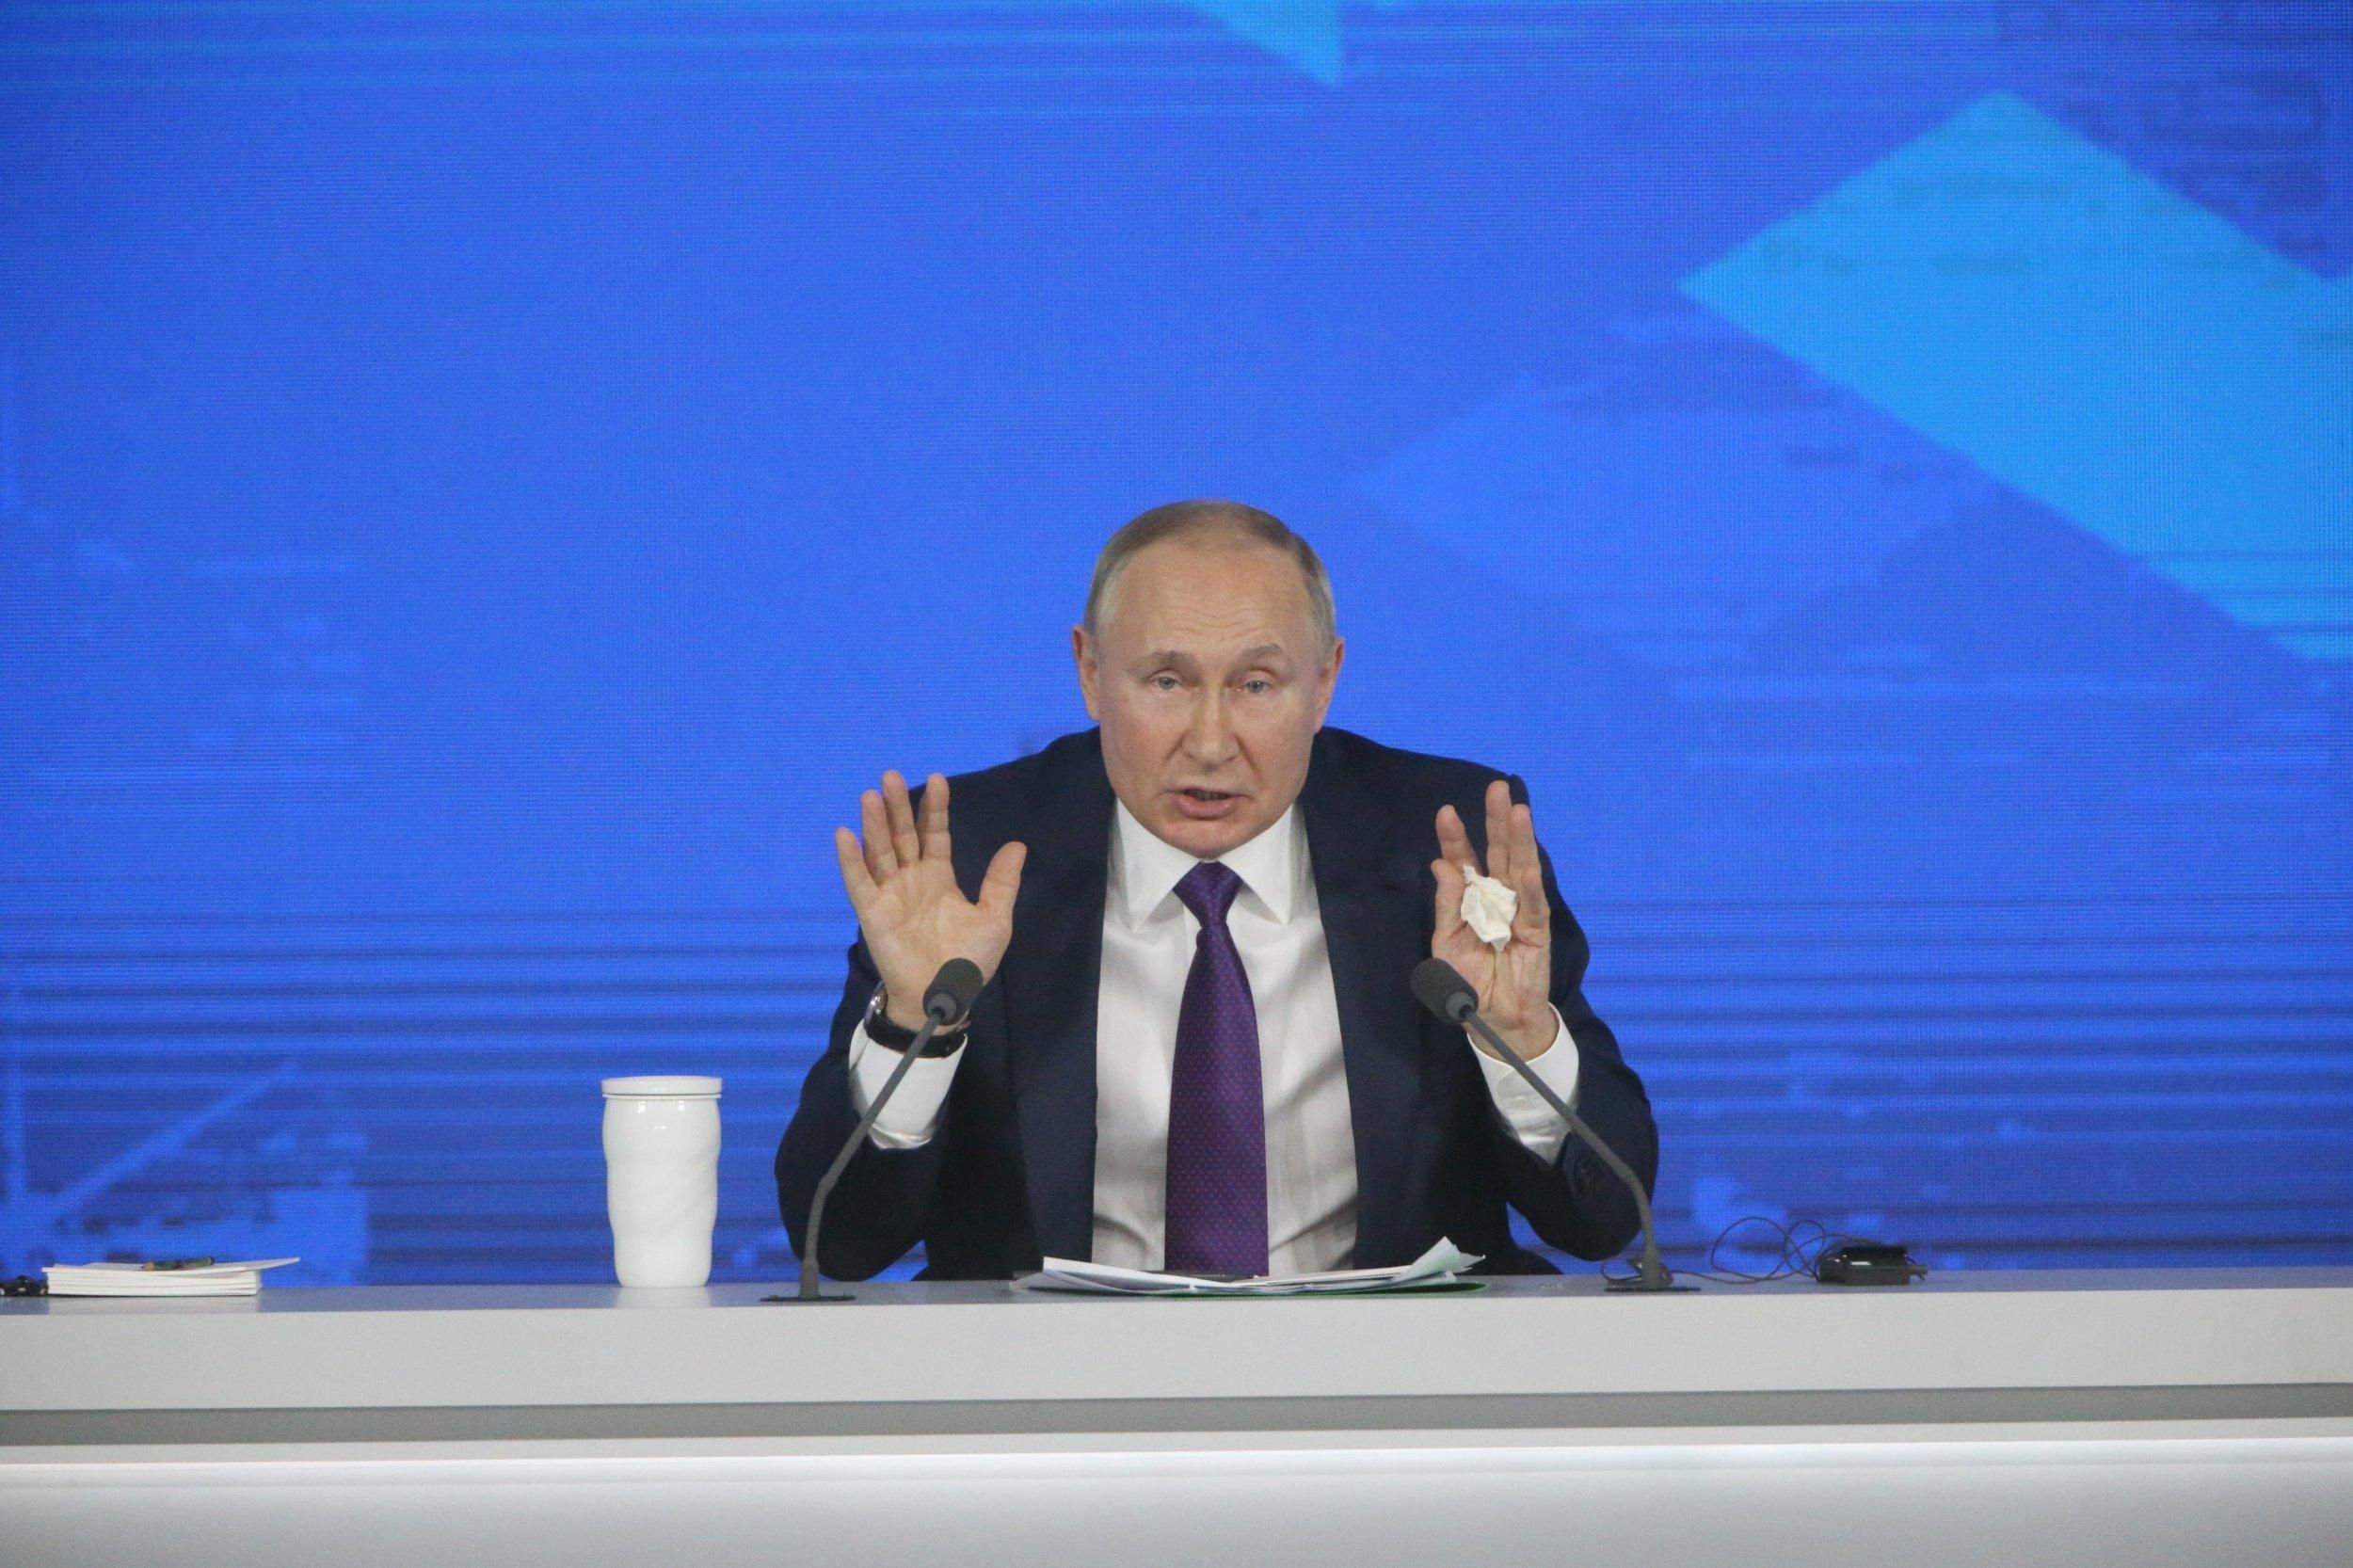 Нафтове ембарго прискорило б падіння режиму Путіна, – радник глави МВС - 24 Канал